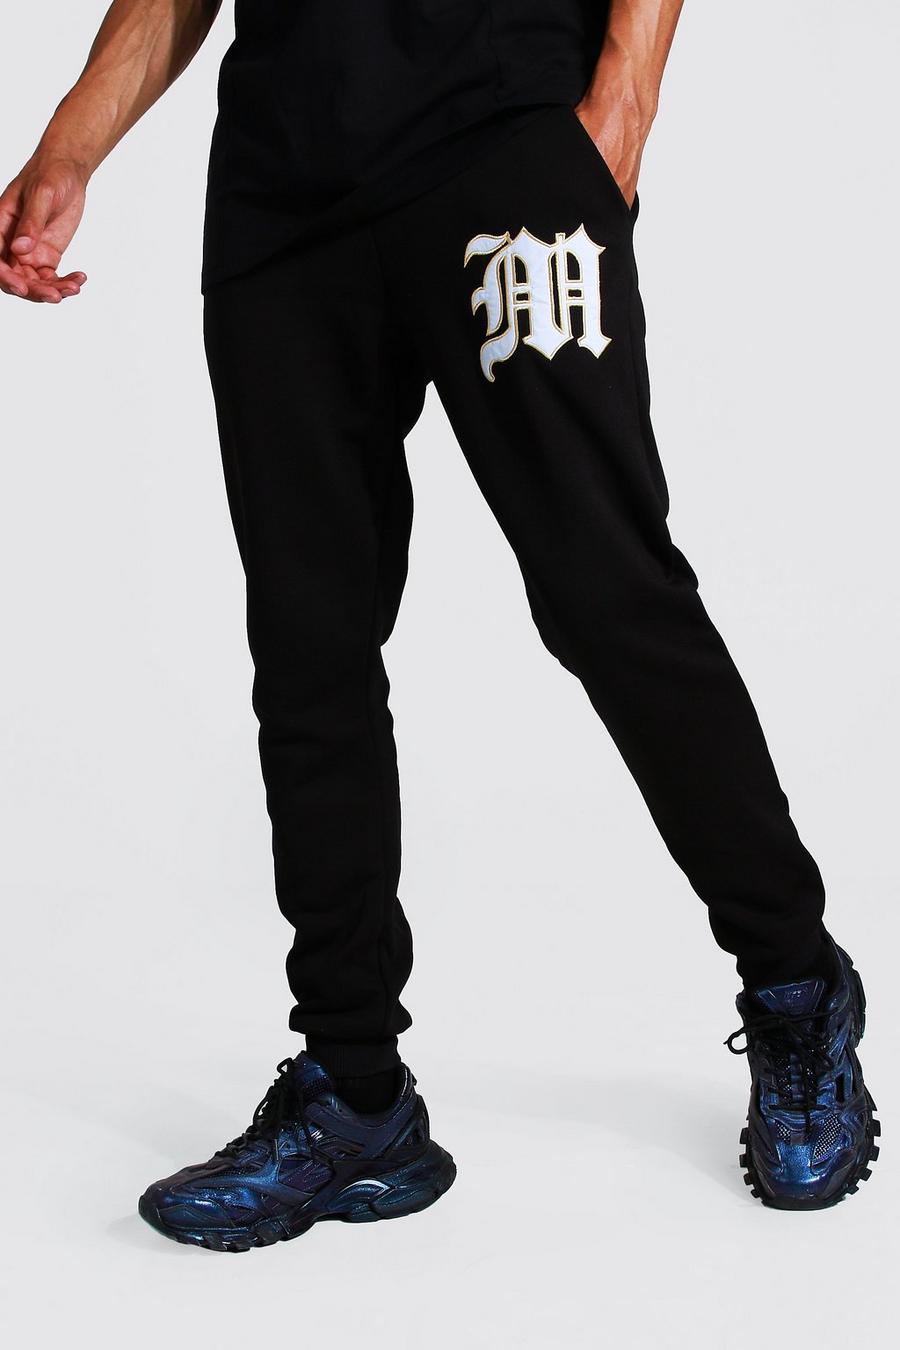 Pantalón deportivo Tall MAN universitario con apliques, Black negro